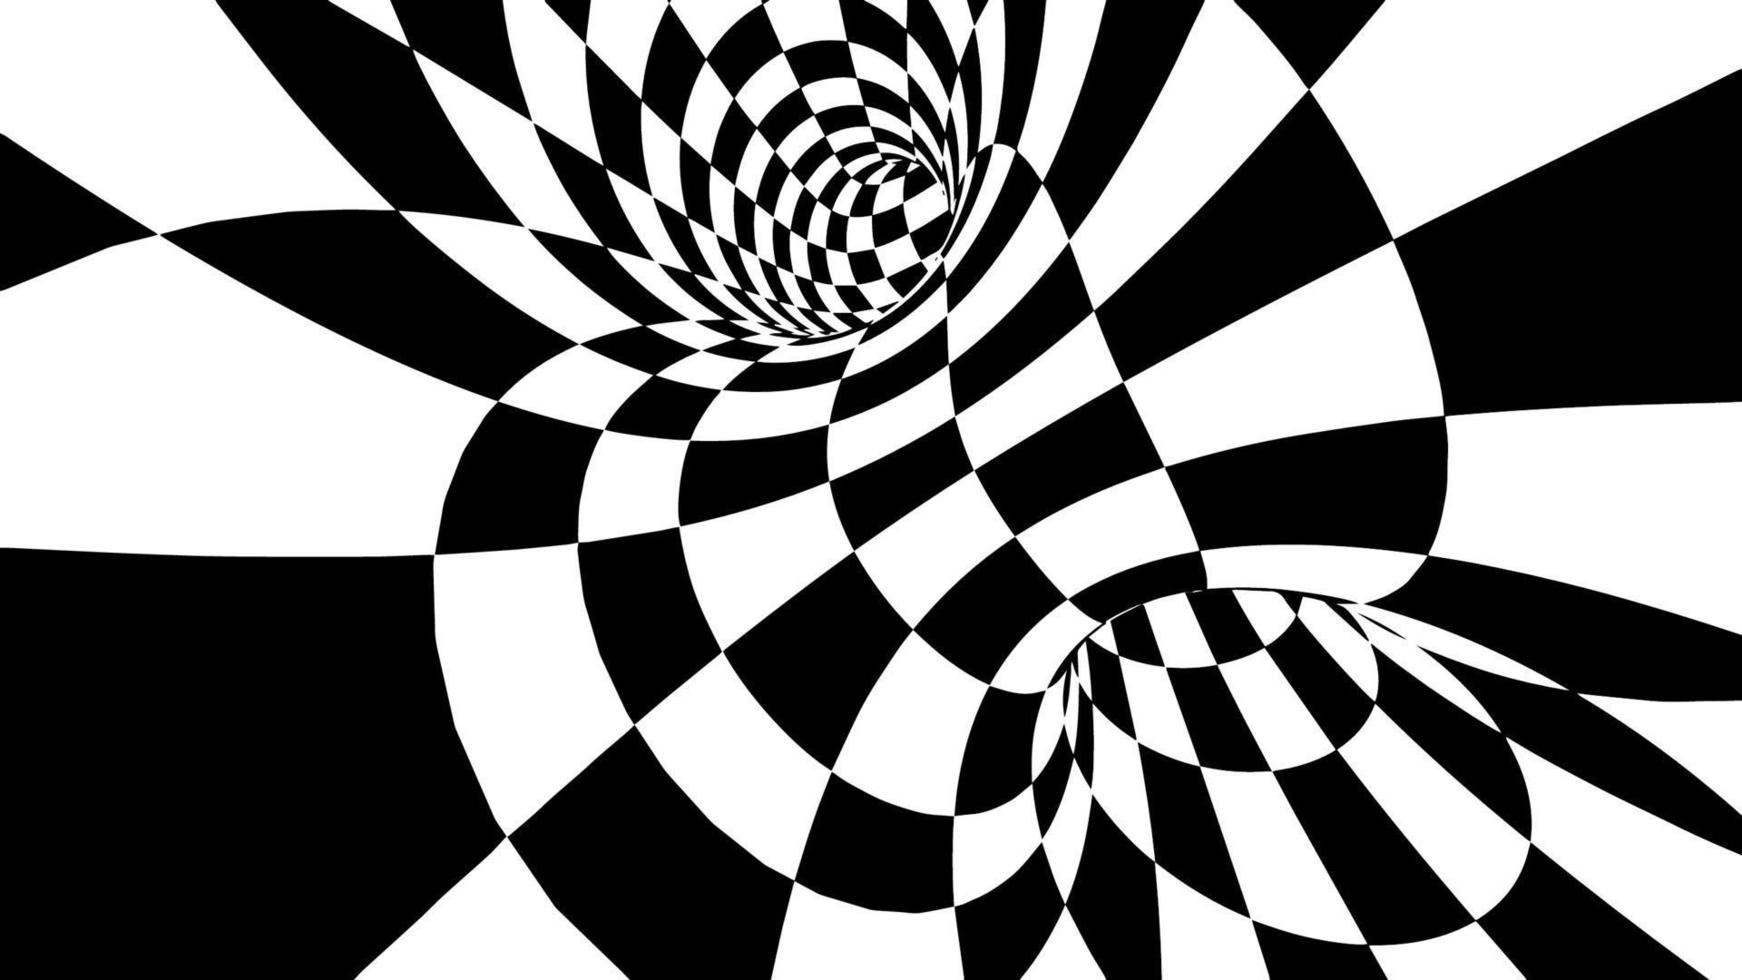 illustration vectorielle de tore à carreaux eps 10. vecteur d'illusion d'optique. fond de championnat de course.